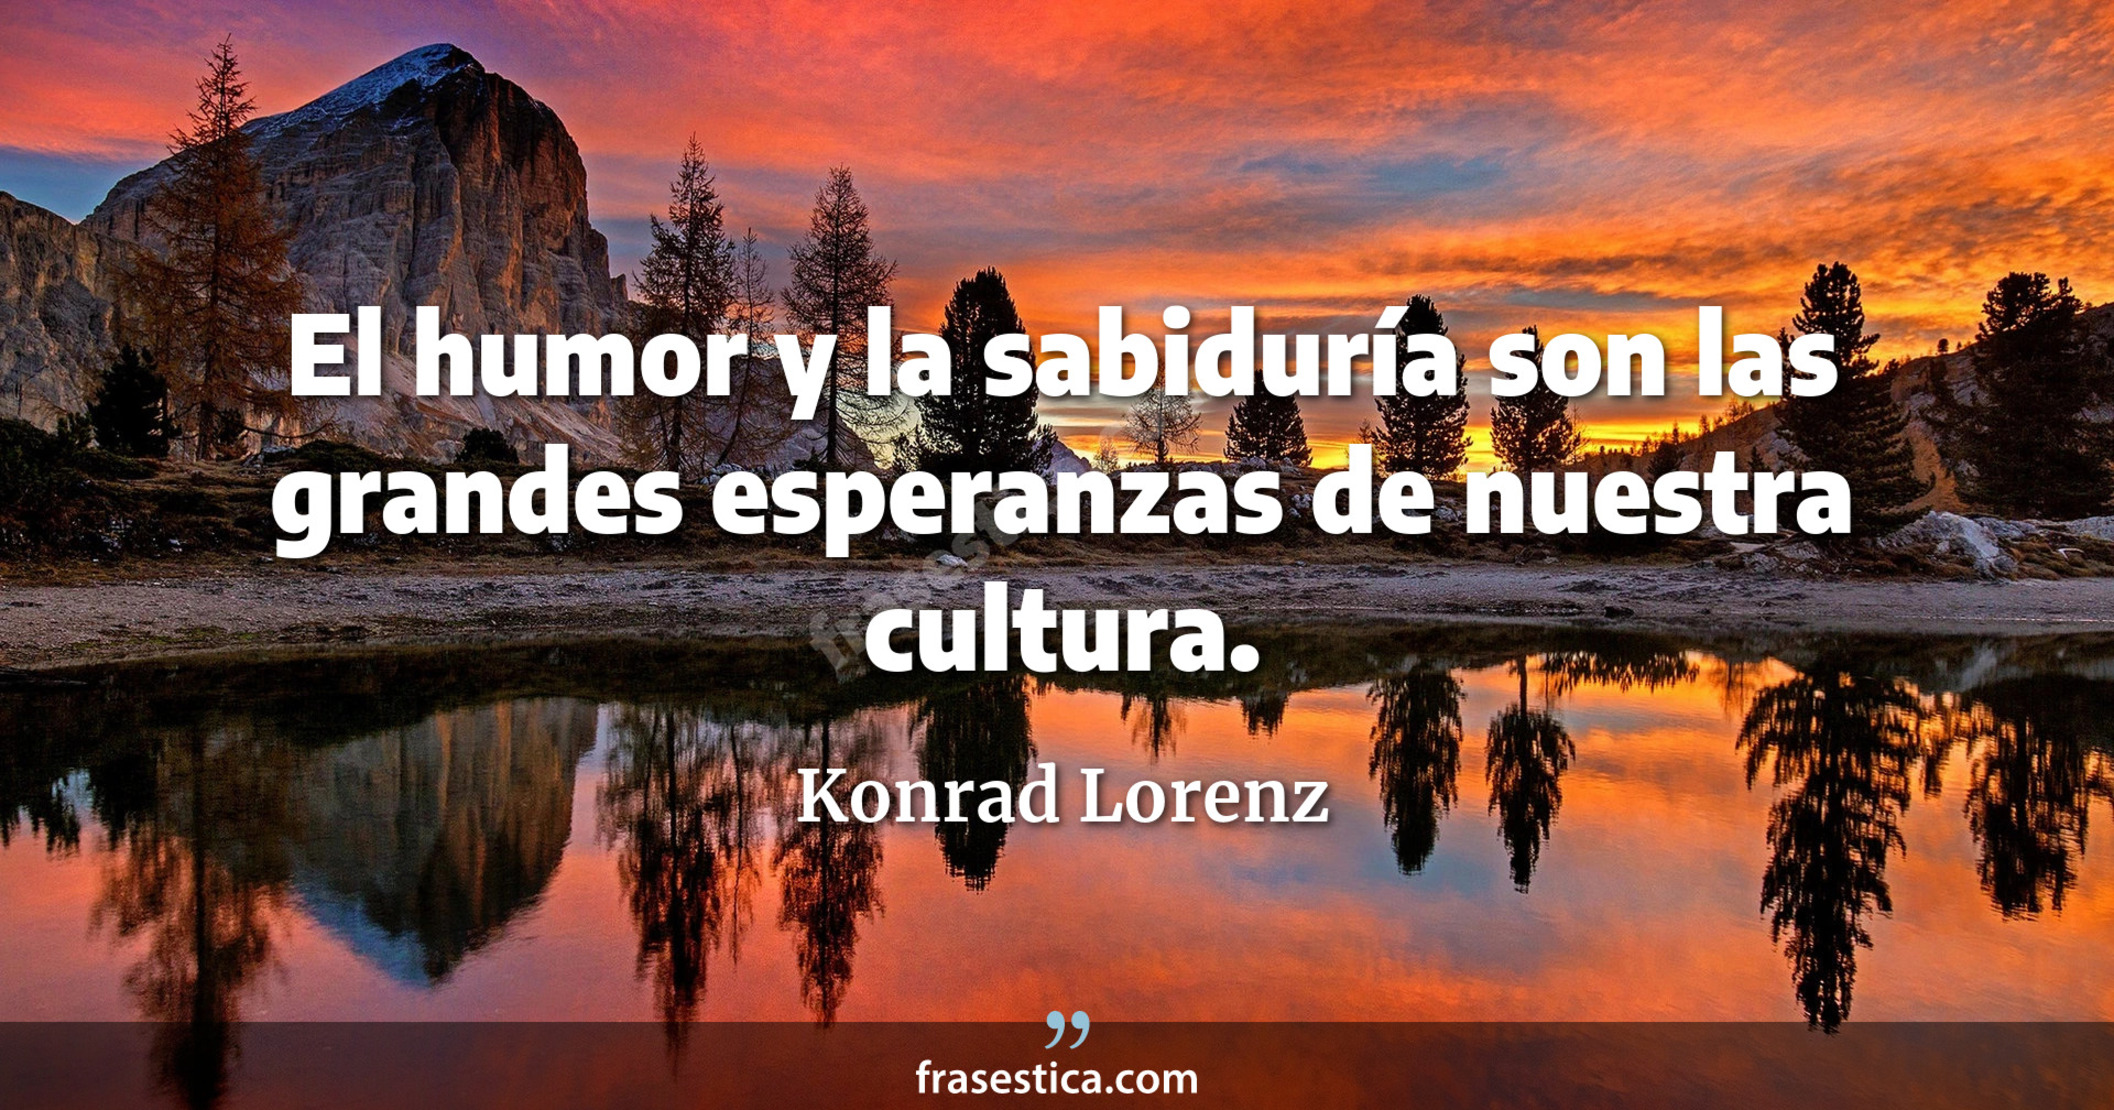 El humor y la sabiduría son las grandes esperanzas de nuestra cultura. - Konrad Lorenz